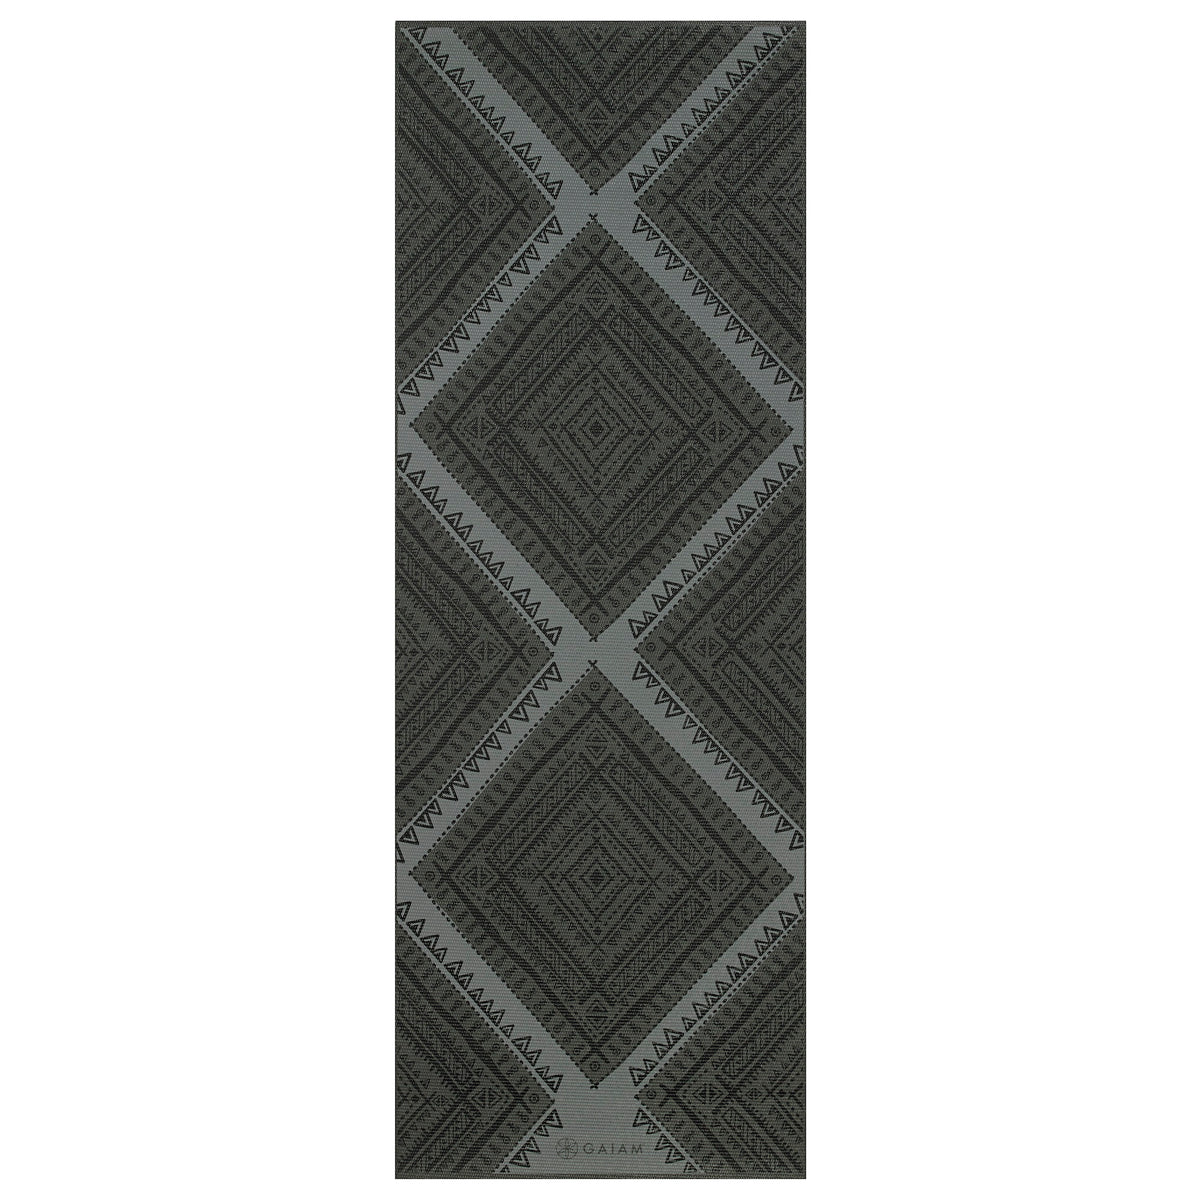 Premium Navajo Yoga Mat (6mm) top black side